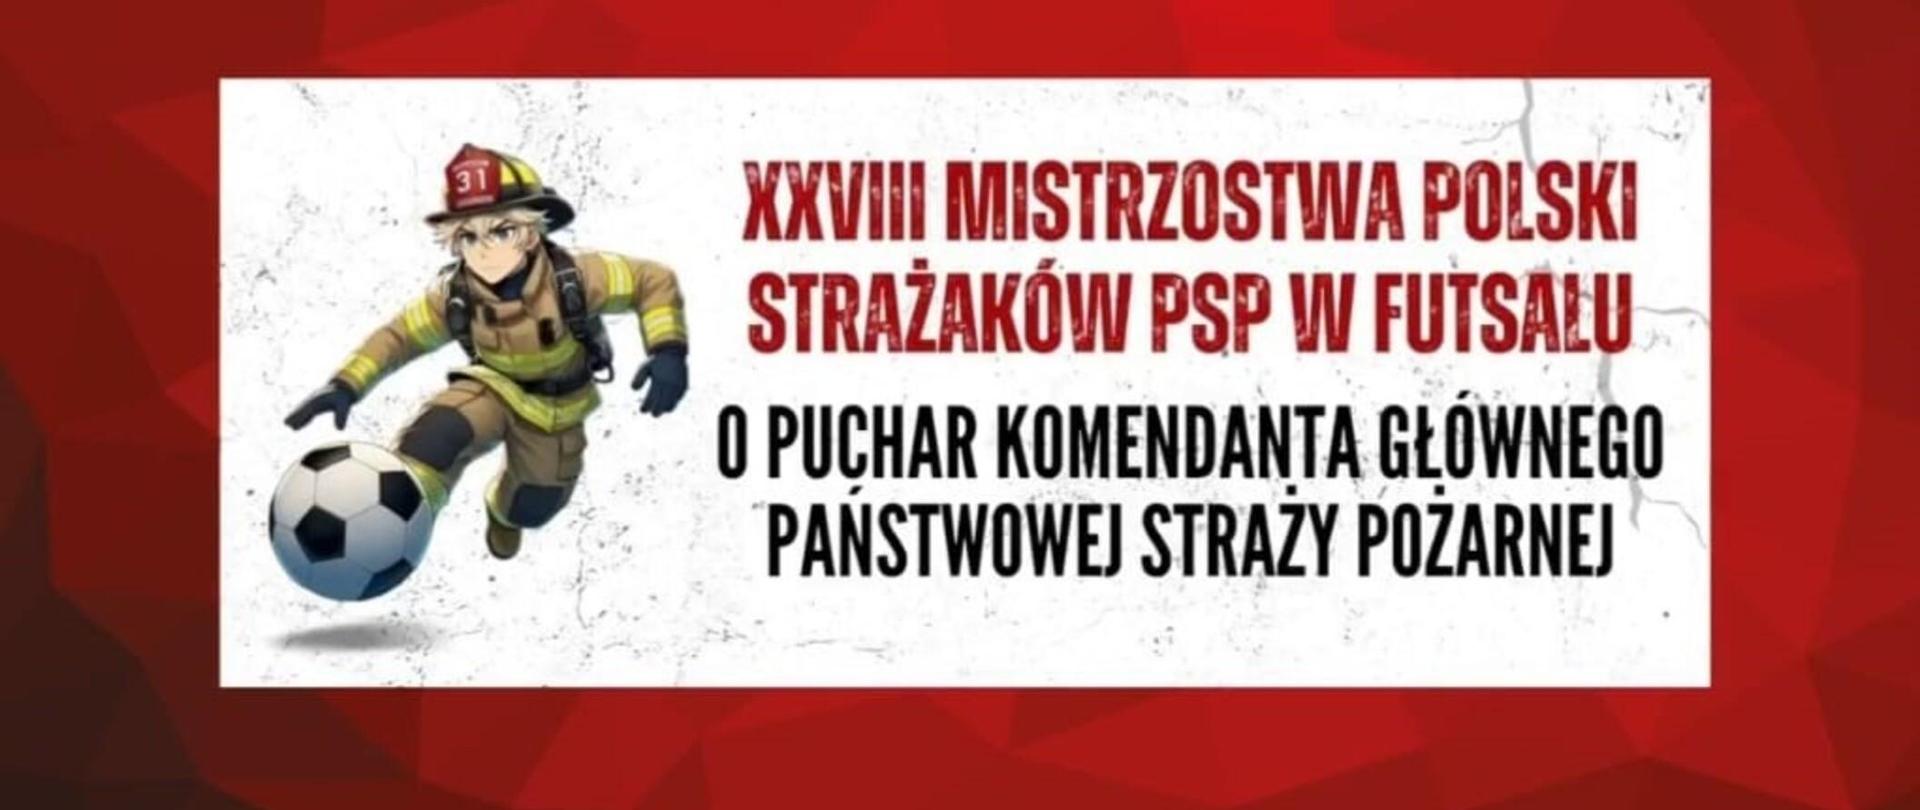 XXVIII Mistrzostwa Polski Strażaków w Futsalu.